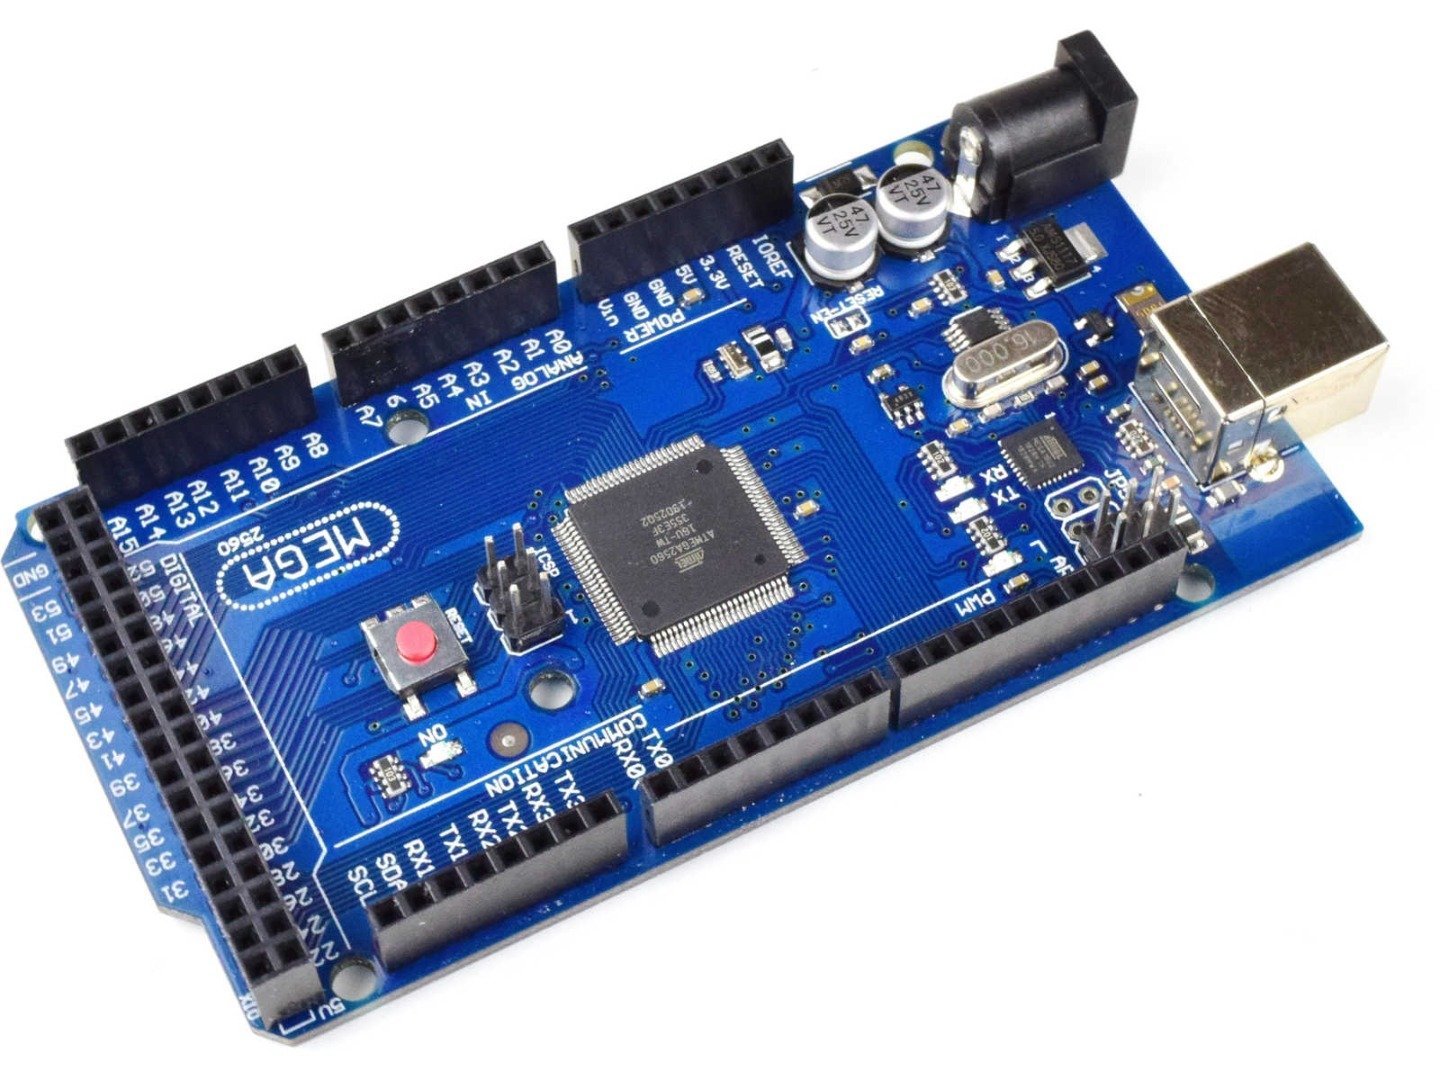 MEGA 2560 R3 module ATmega2560 + ATmega16u2 (100% compatible with Arduino) 7